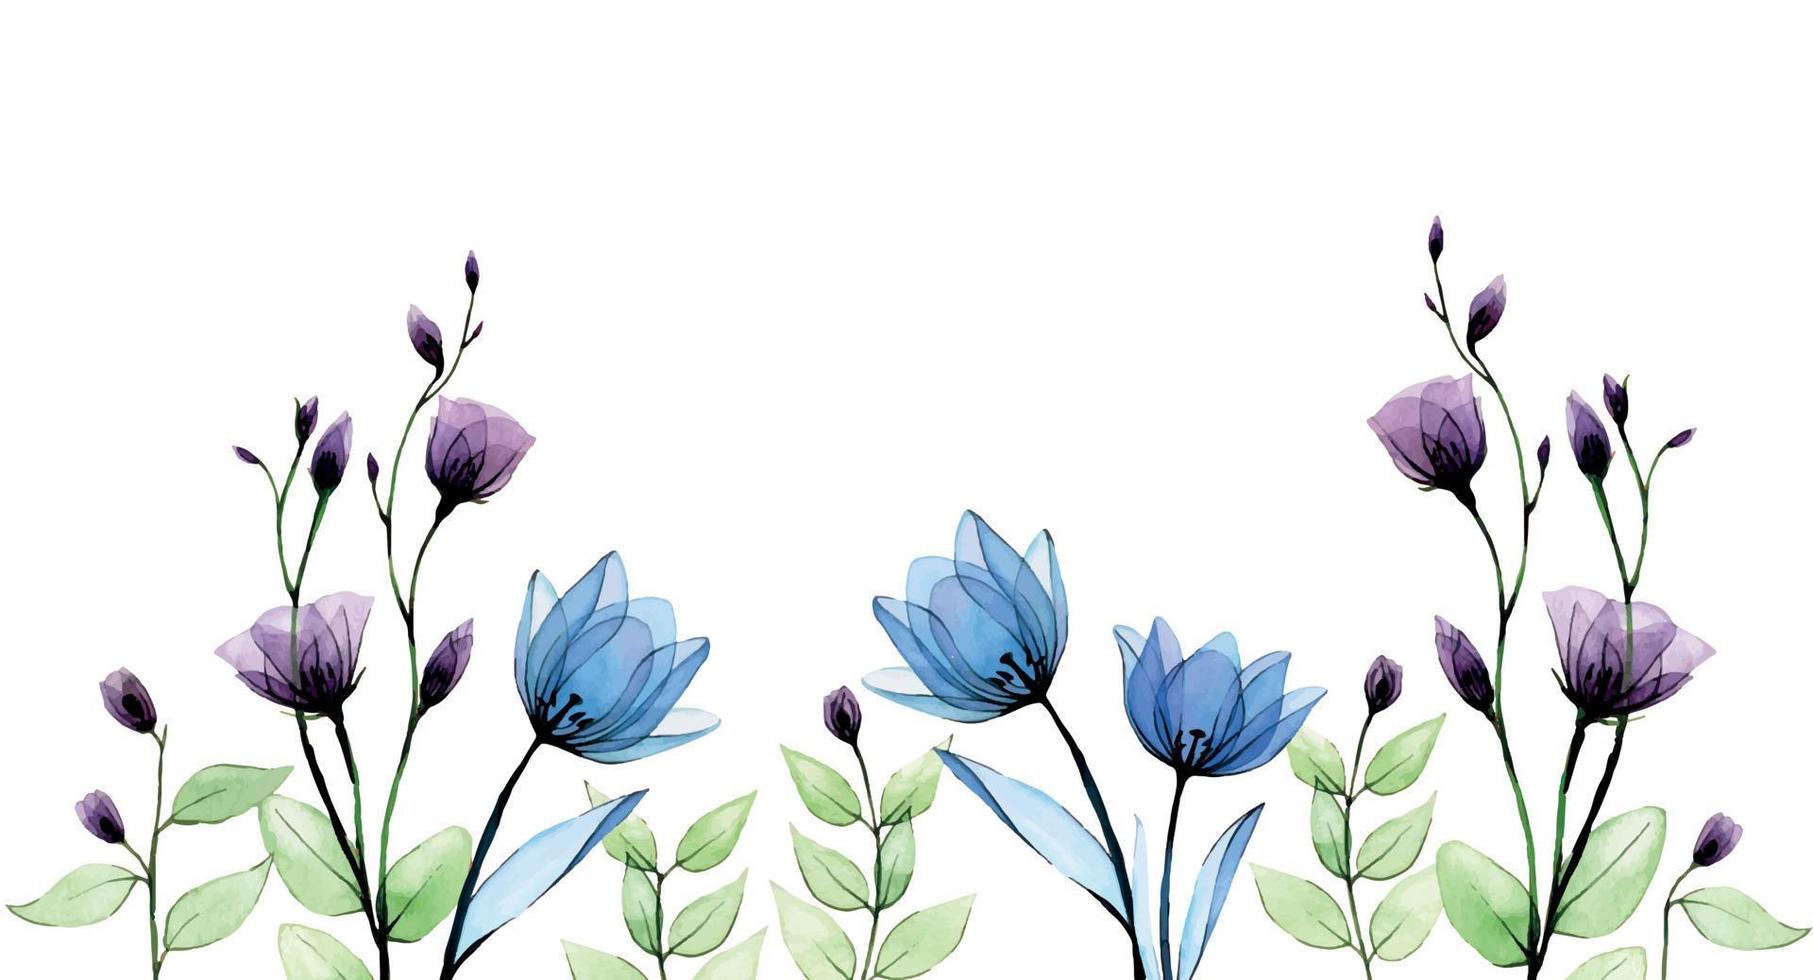 bannière aquarelle, bordure avec fleurs transparentes. dessin à la main vintage avec des fleurs sauvages bleues et violettes et des herbes vertes et des branches sur fond blanc. aquarelle délicate vecteur